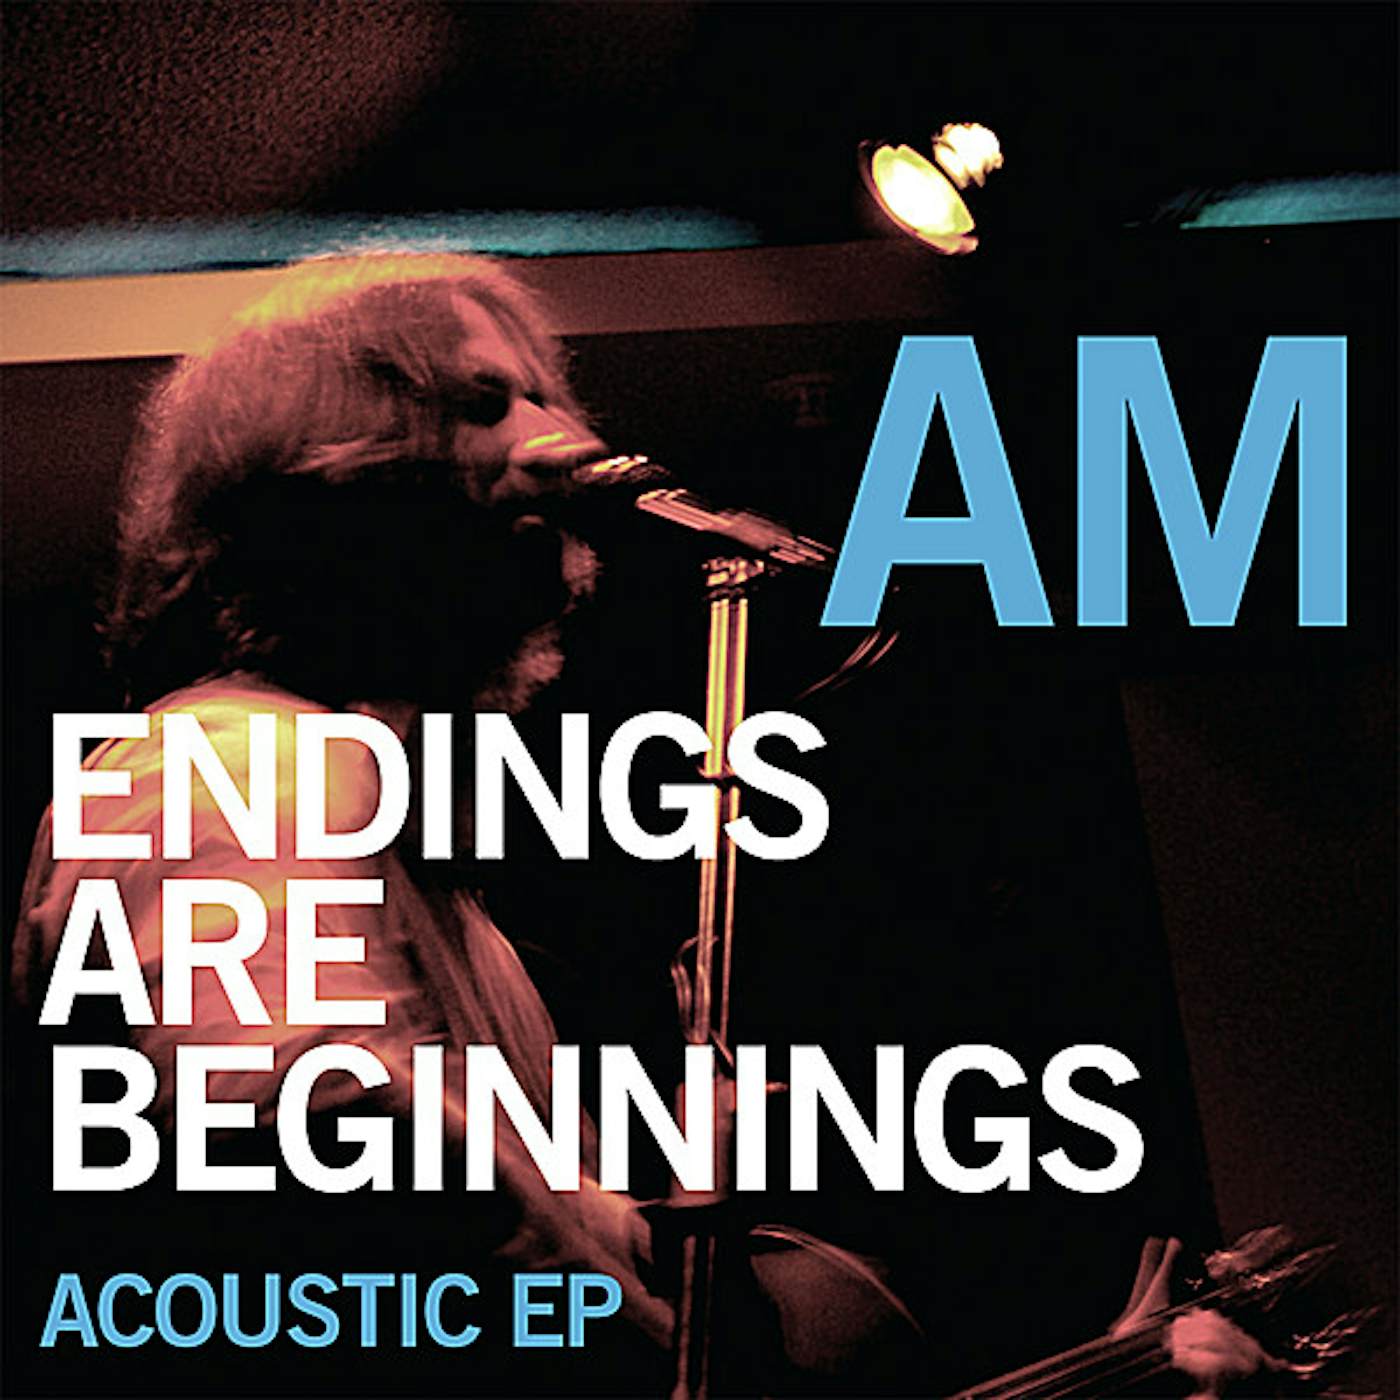 AM ENDINGS ARE BEGINNINGS ACOUSTIC EP CD